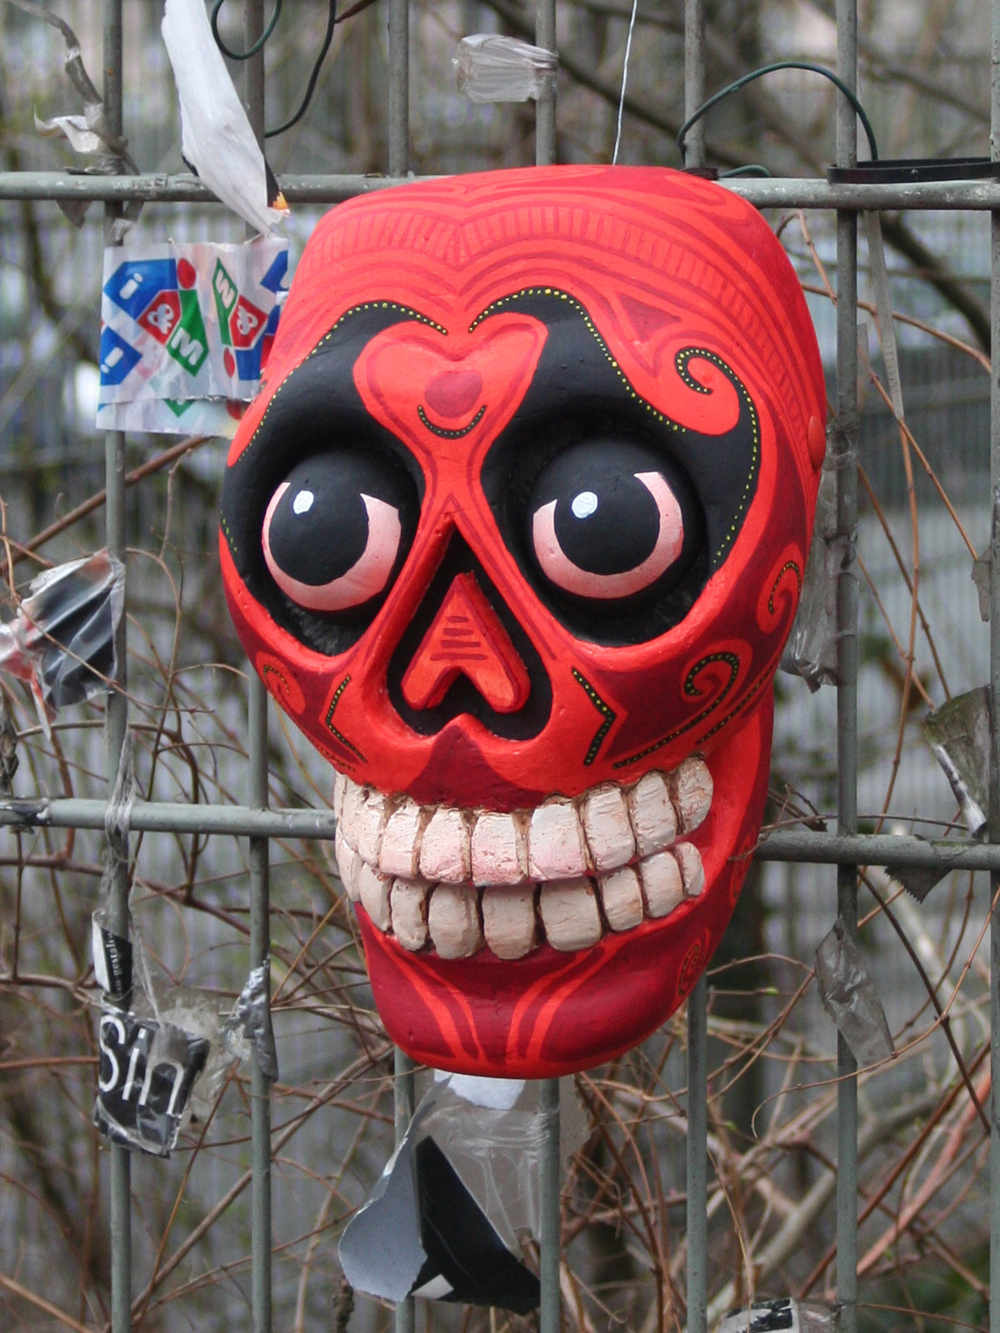 mexico mexiko Sugar Skulls skulls dia de los muertos day of the dead Calaveras